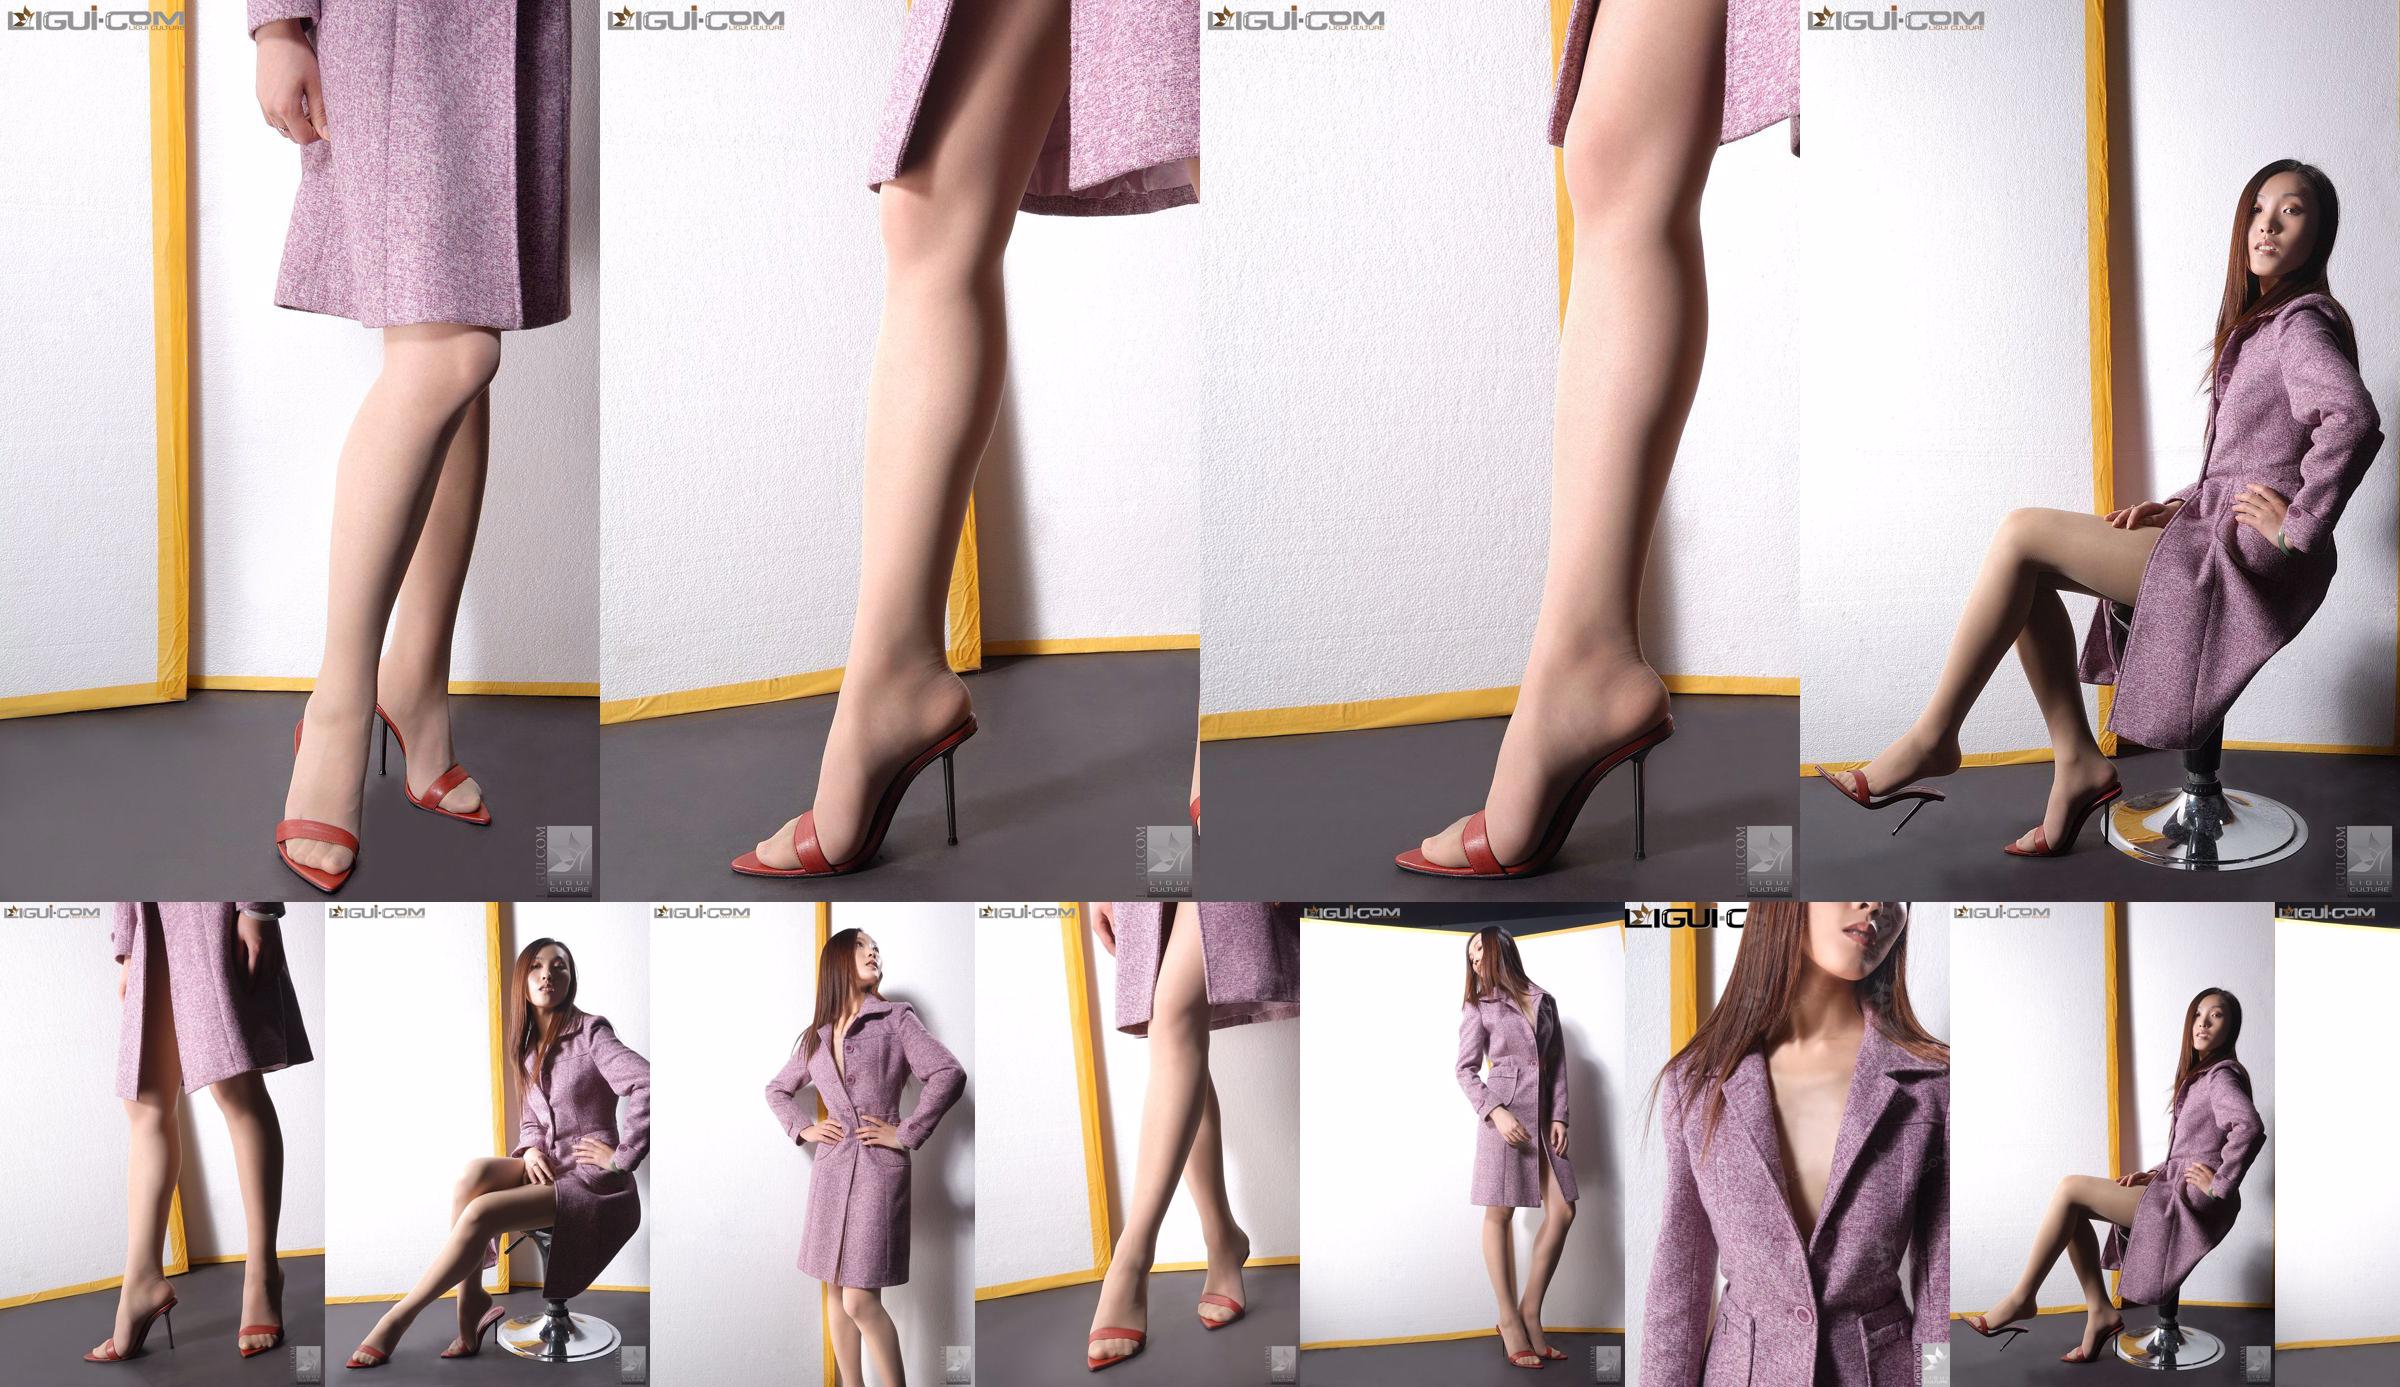 Model Zhang Ai "Eibenmädchen mit hohen Absätzen" [Ligui LiGui] Foto von schönen Beinen und Füßen No.9e944b Seite 3